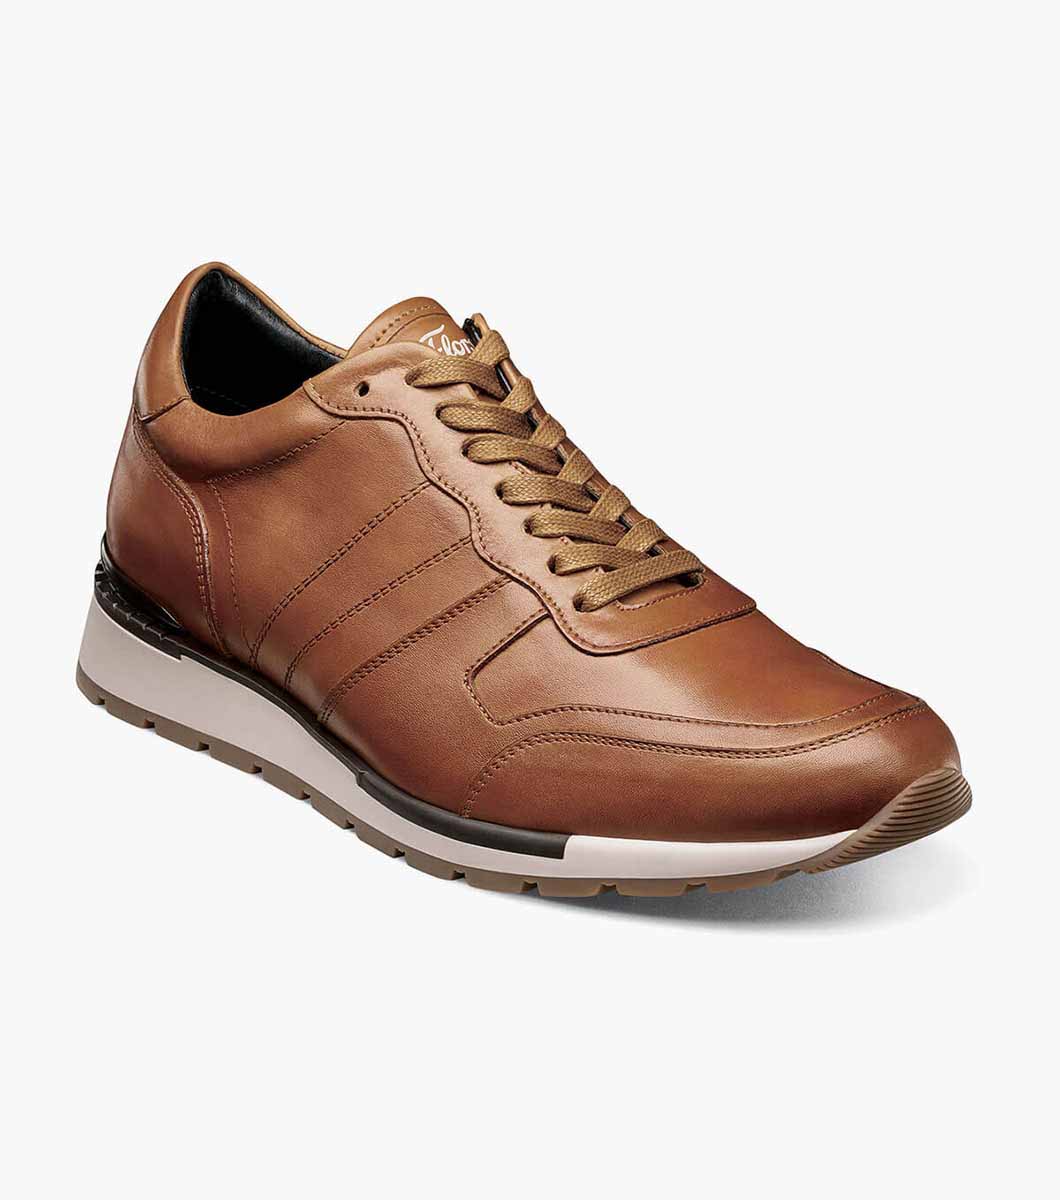 Redwood Moc Toe Lace Up Sneaker Men's Casual Shoes | Florsheim.com